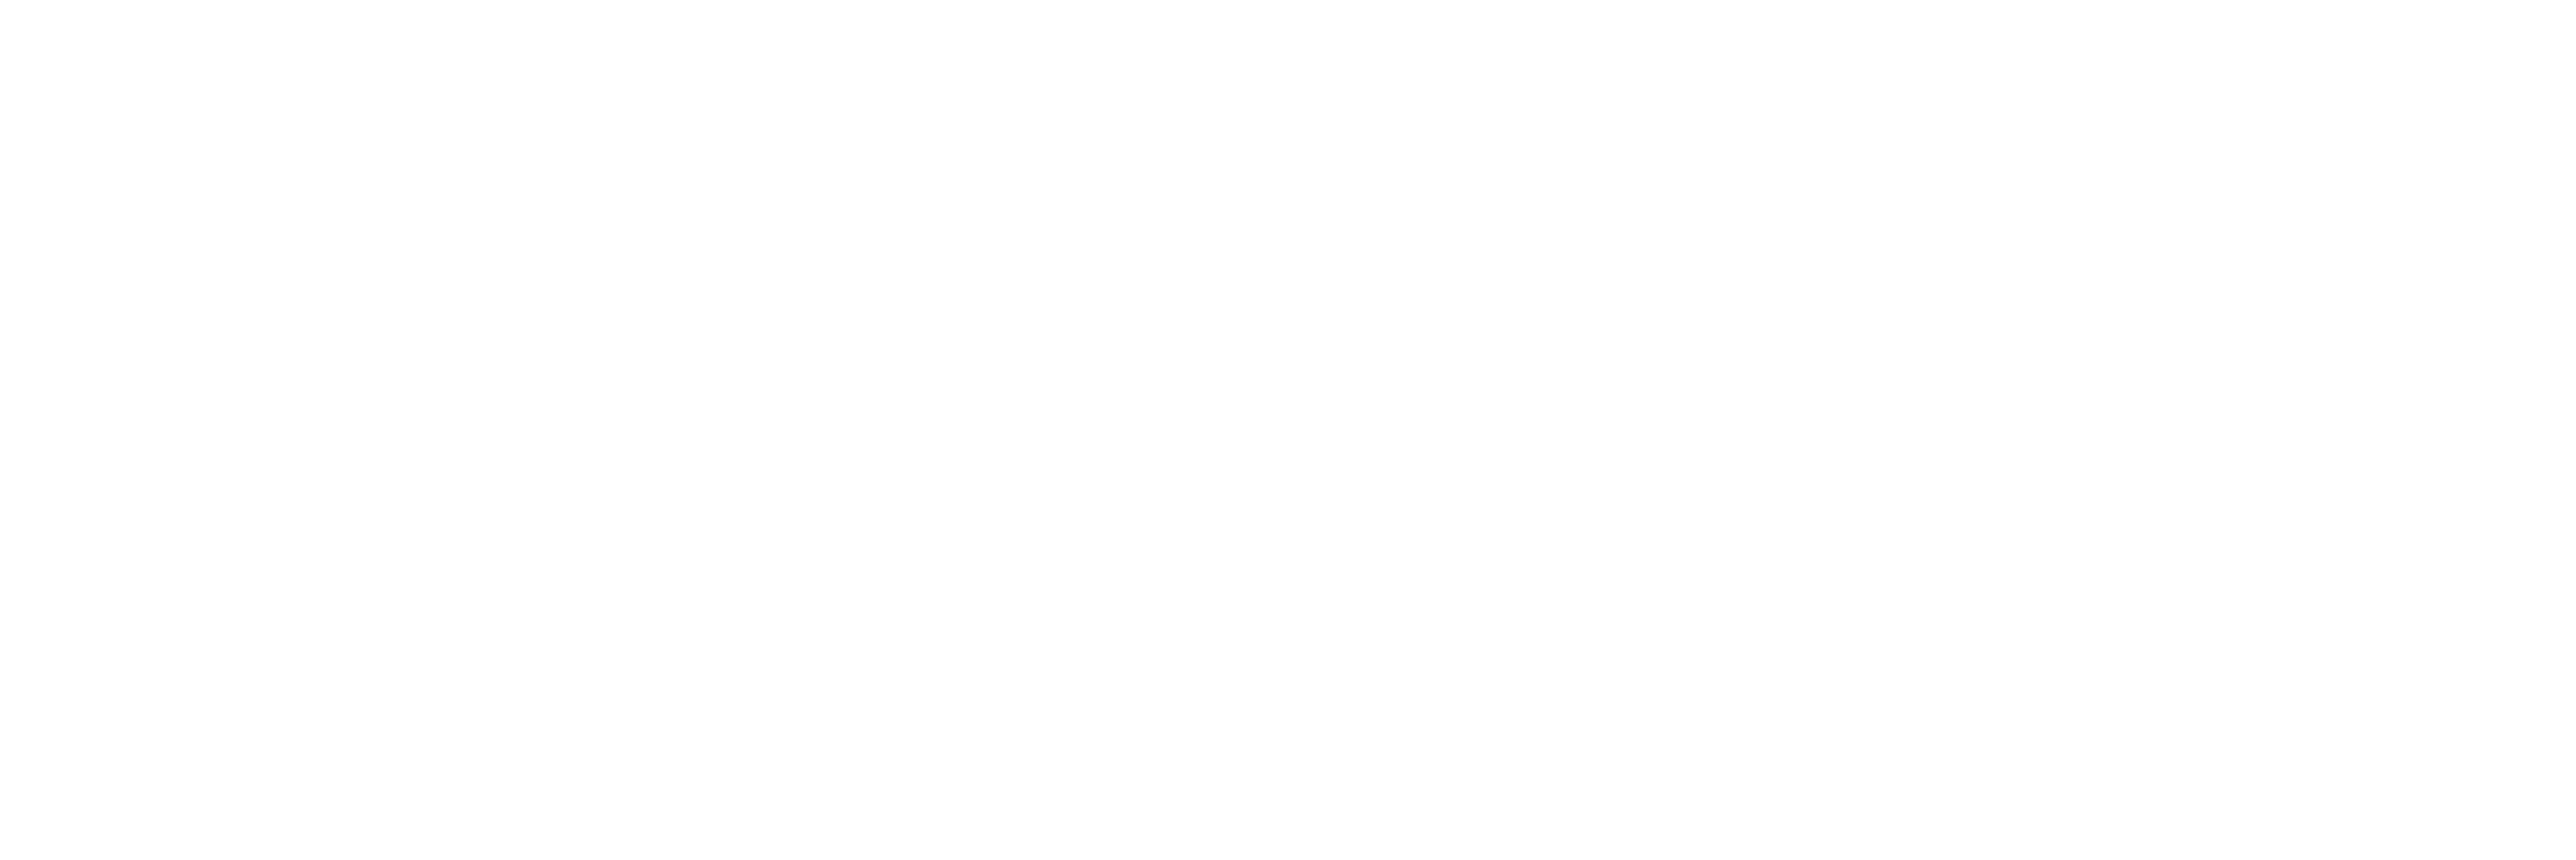 Acheter des produits japonais avec Zenmarket - Communiqués